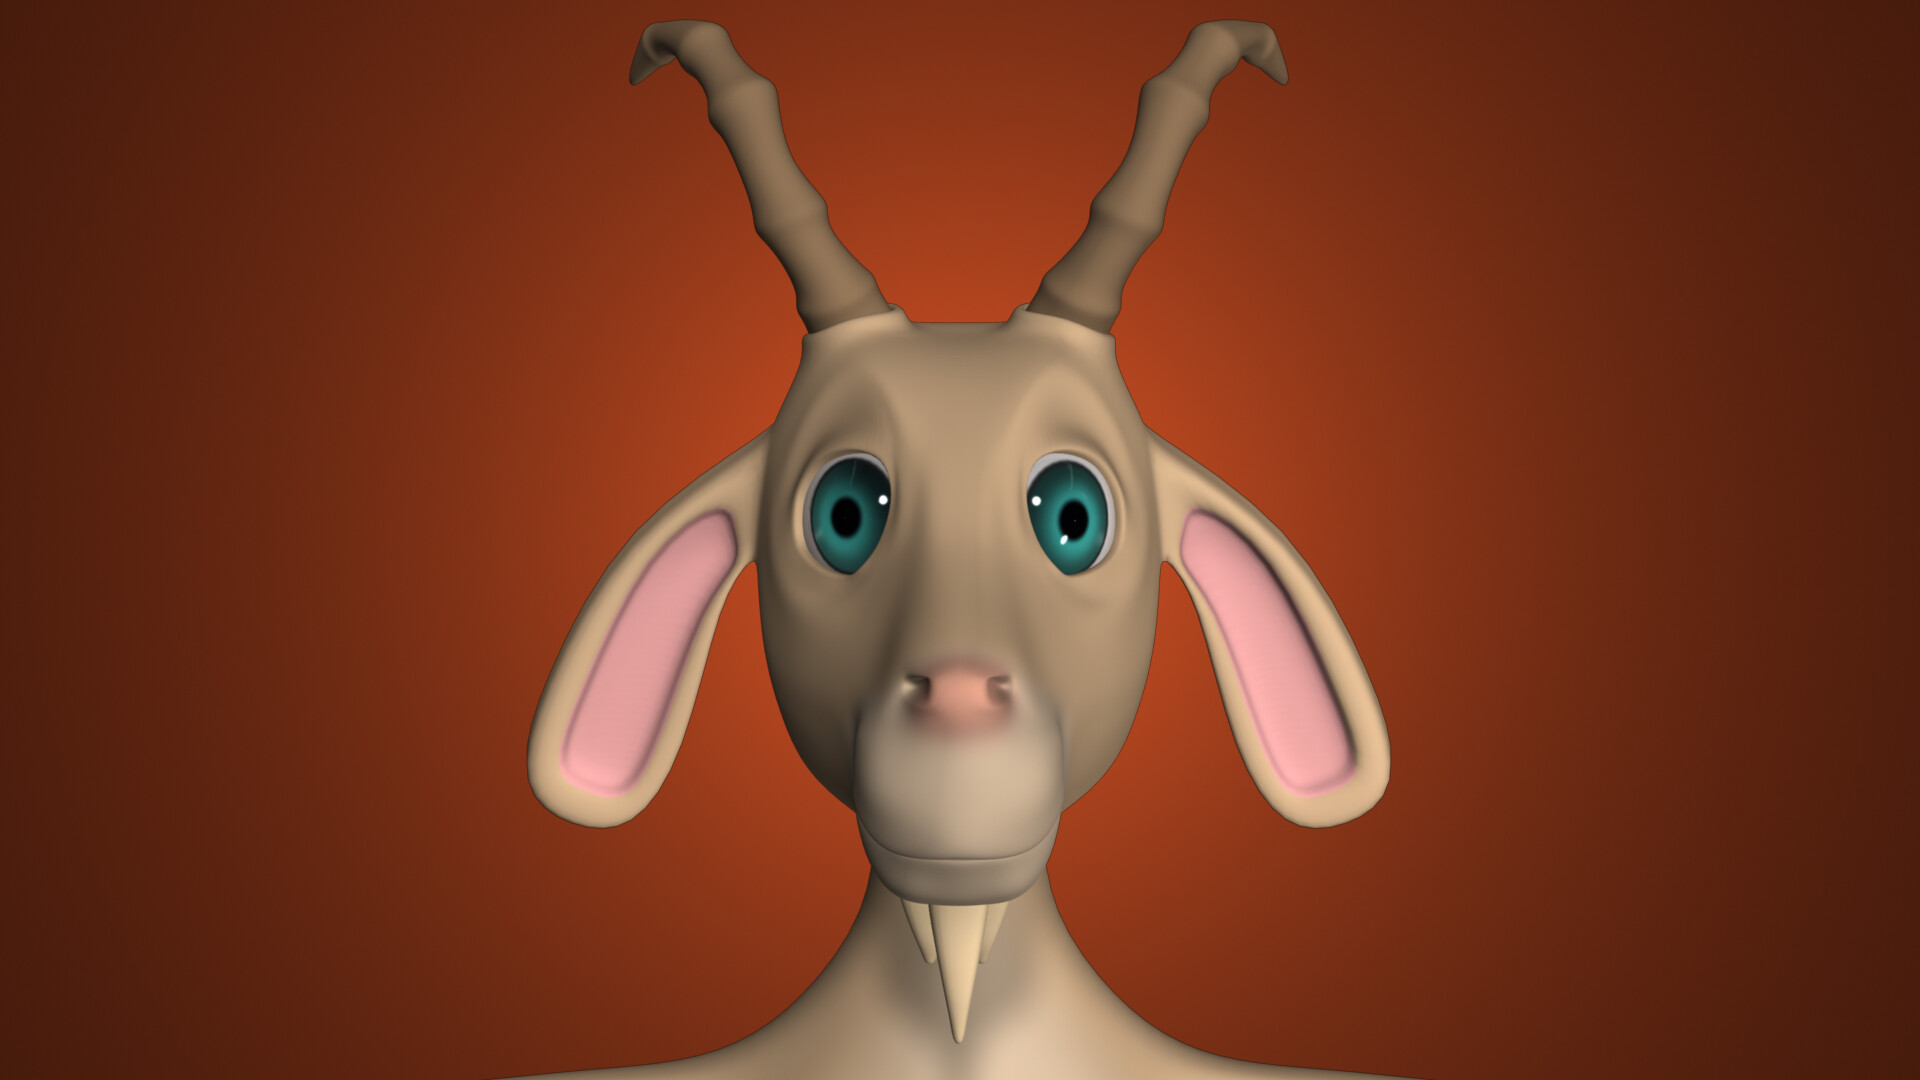 ArtStation - Humanoid 3D Cartoon Goat